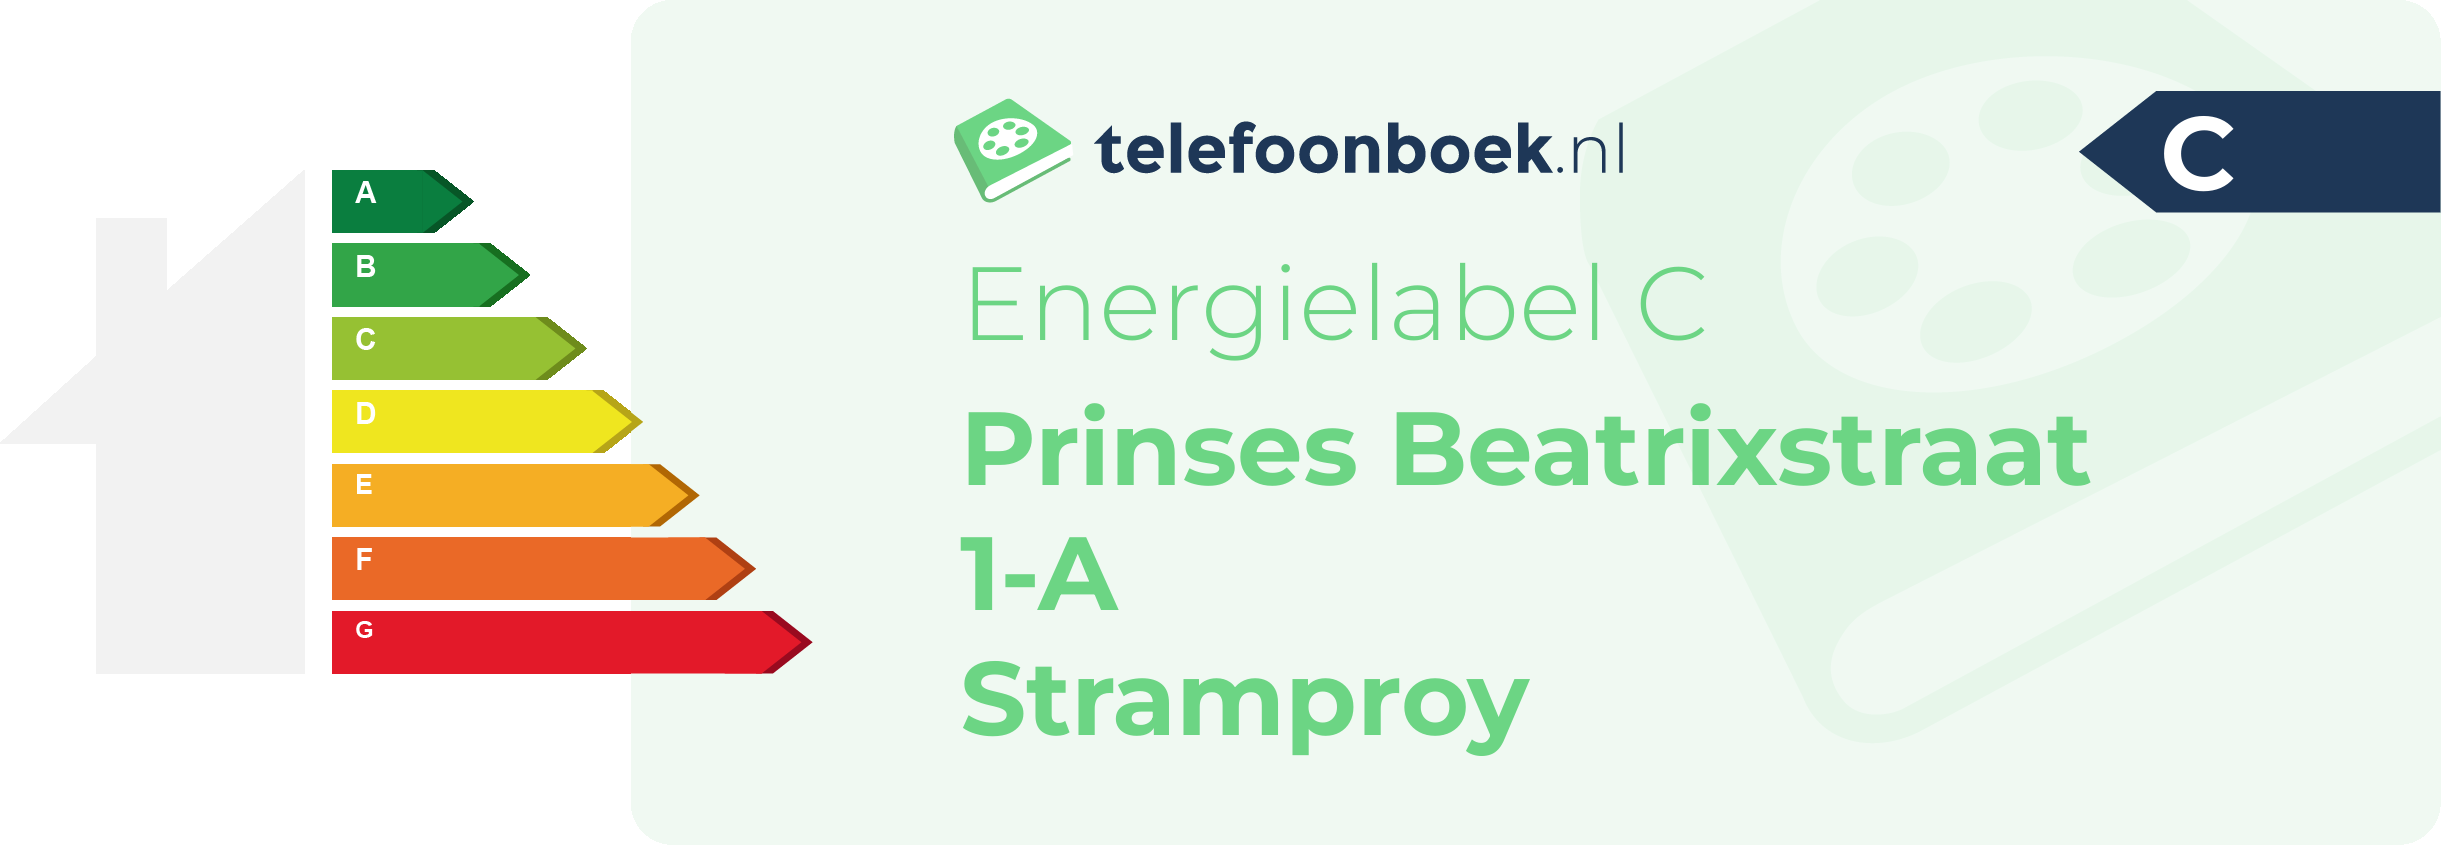 Energielabel Prinses Beatrixstraat 1-A Stramproy